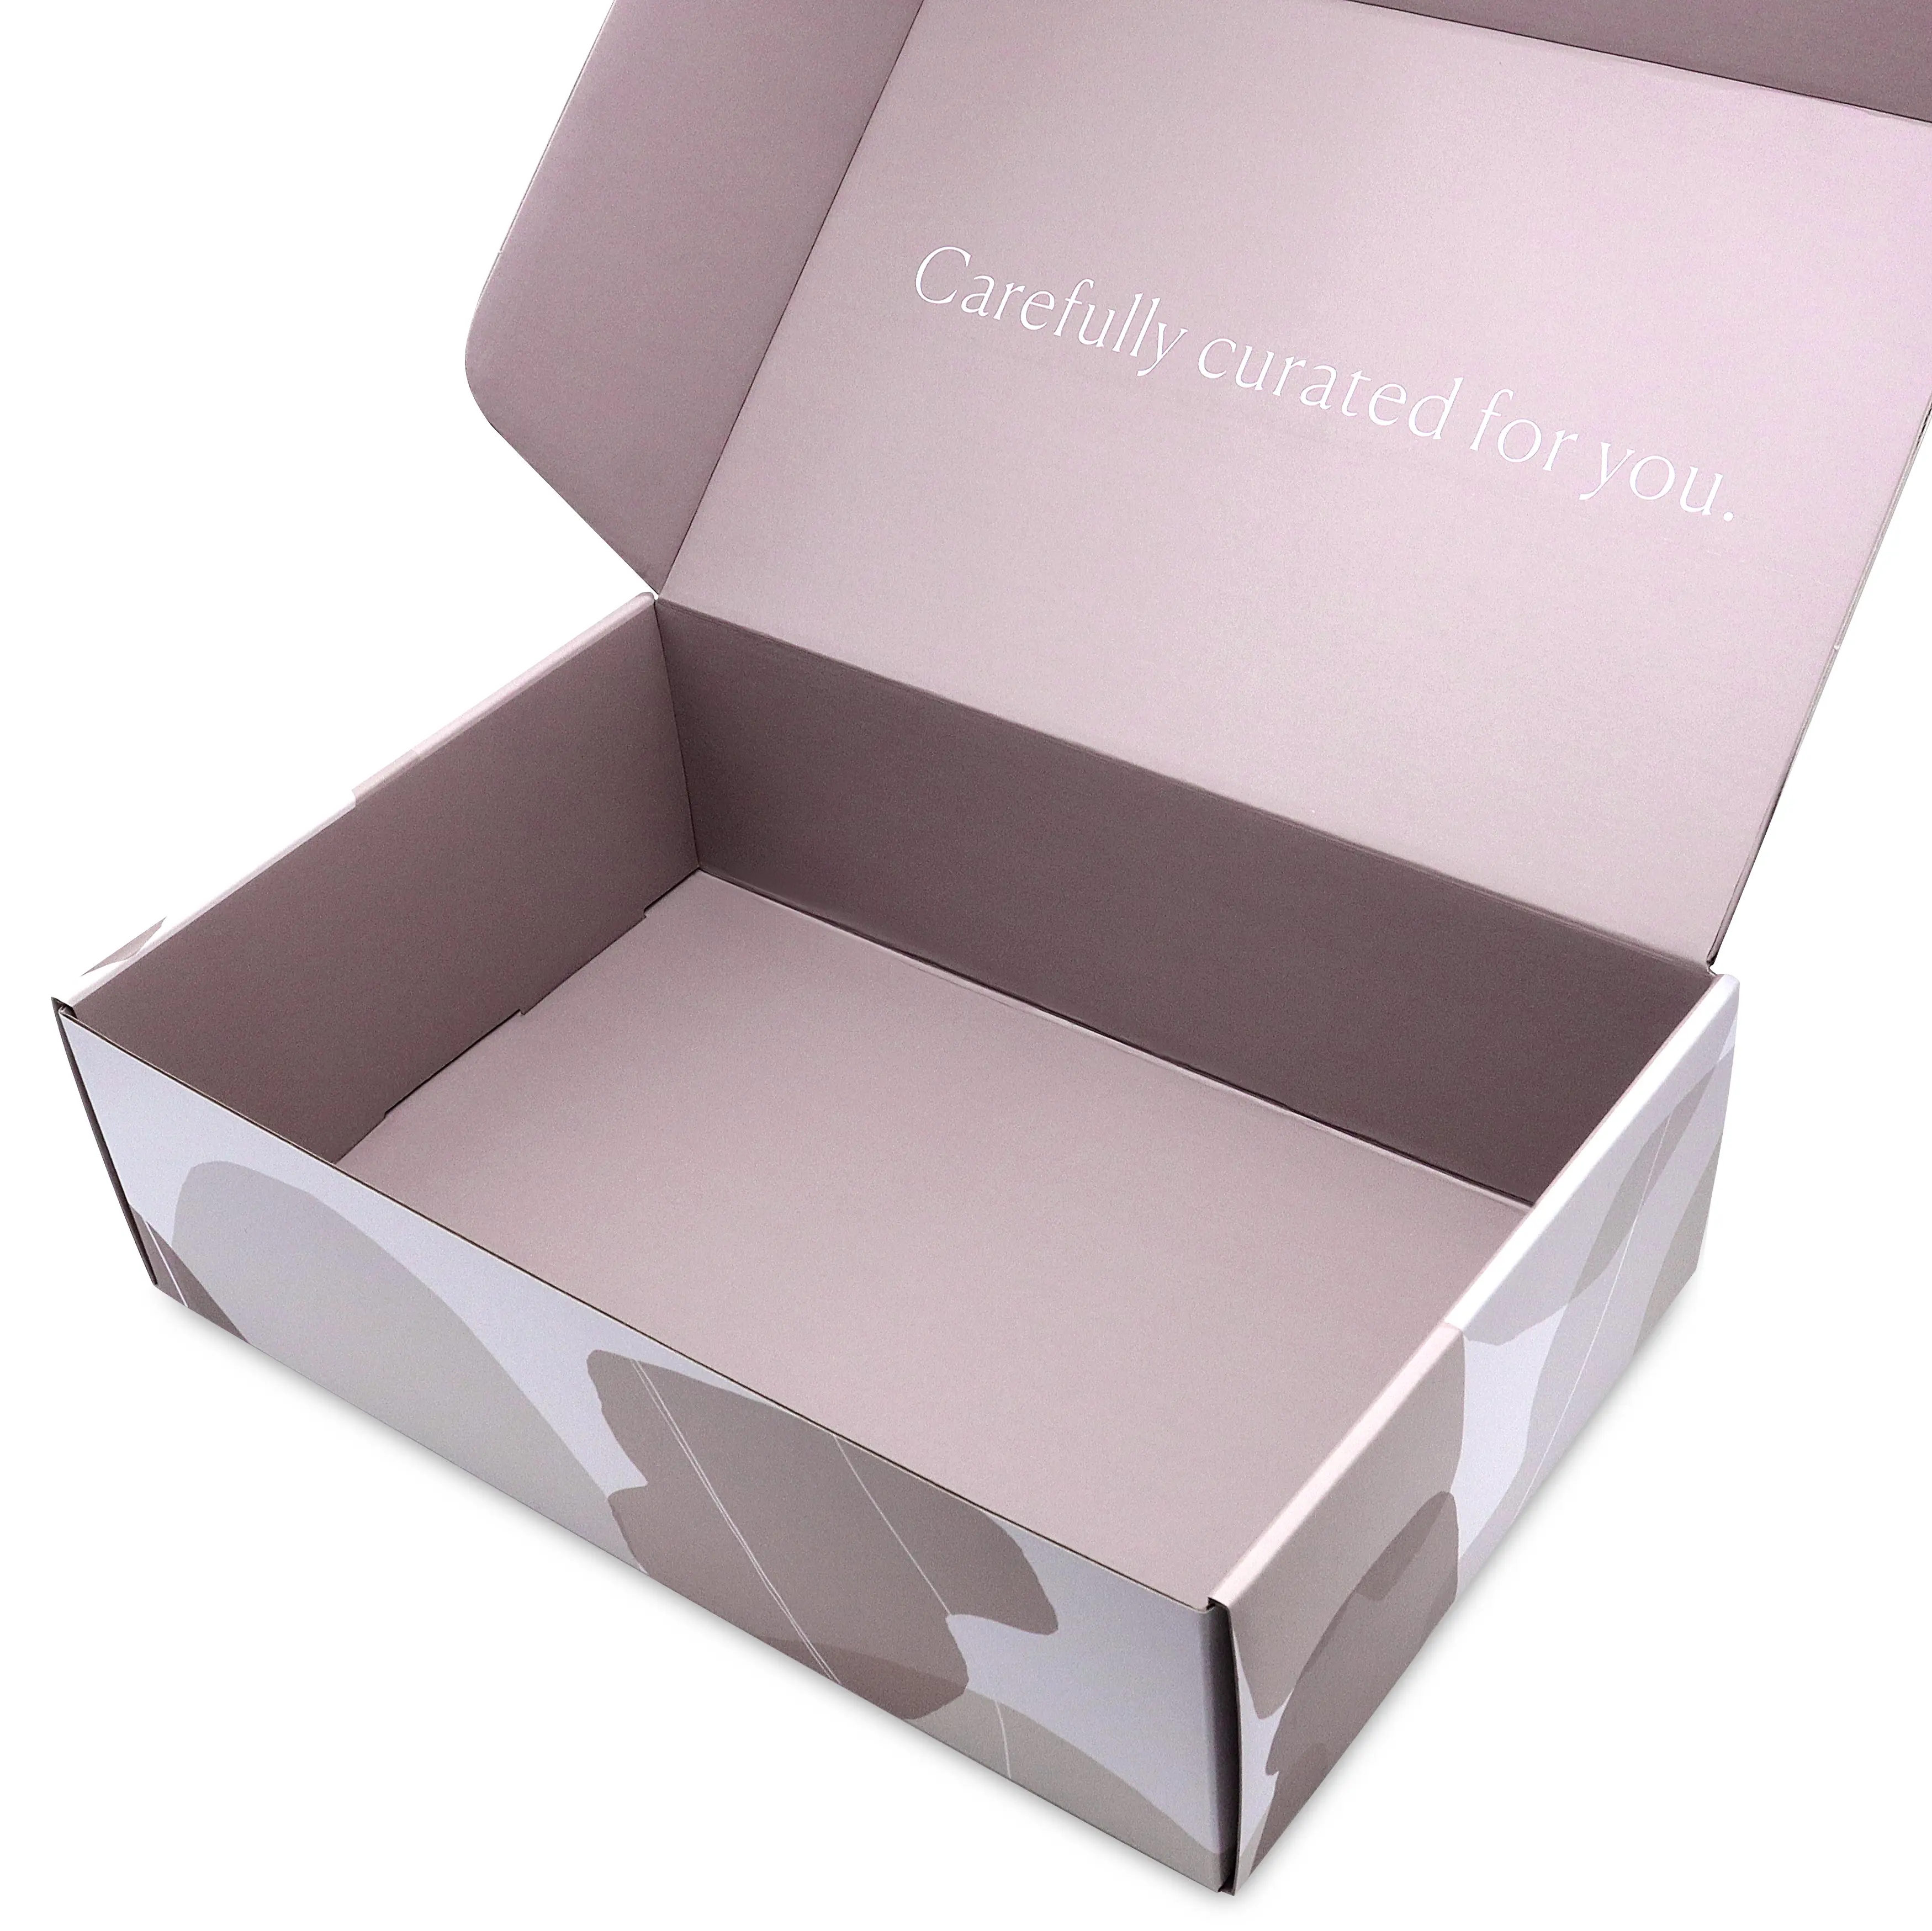 Оптовые поставки розового гофрированного картона, маленькие коробки для носков, нижнее белье, обувь, бесплатная доставка с логотипом